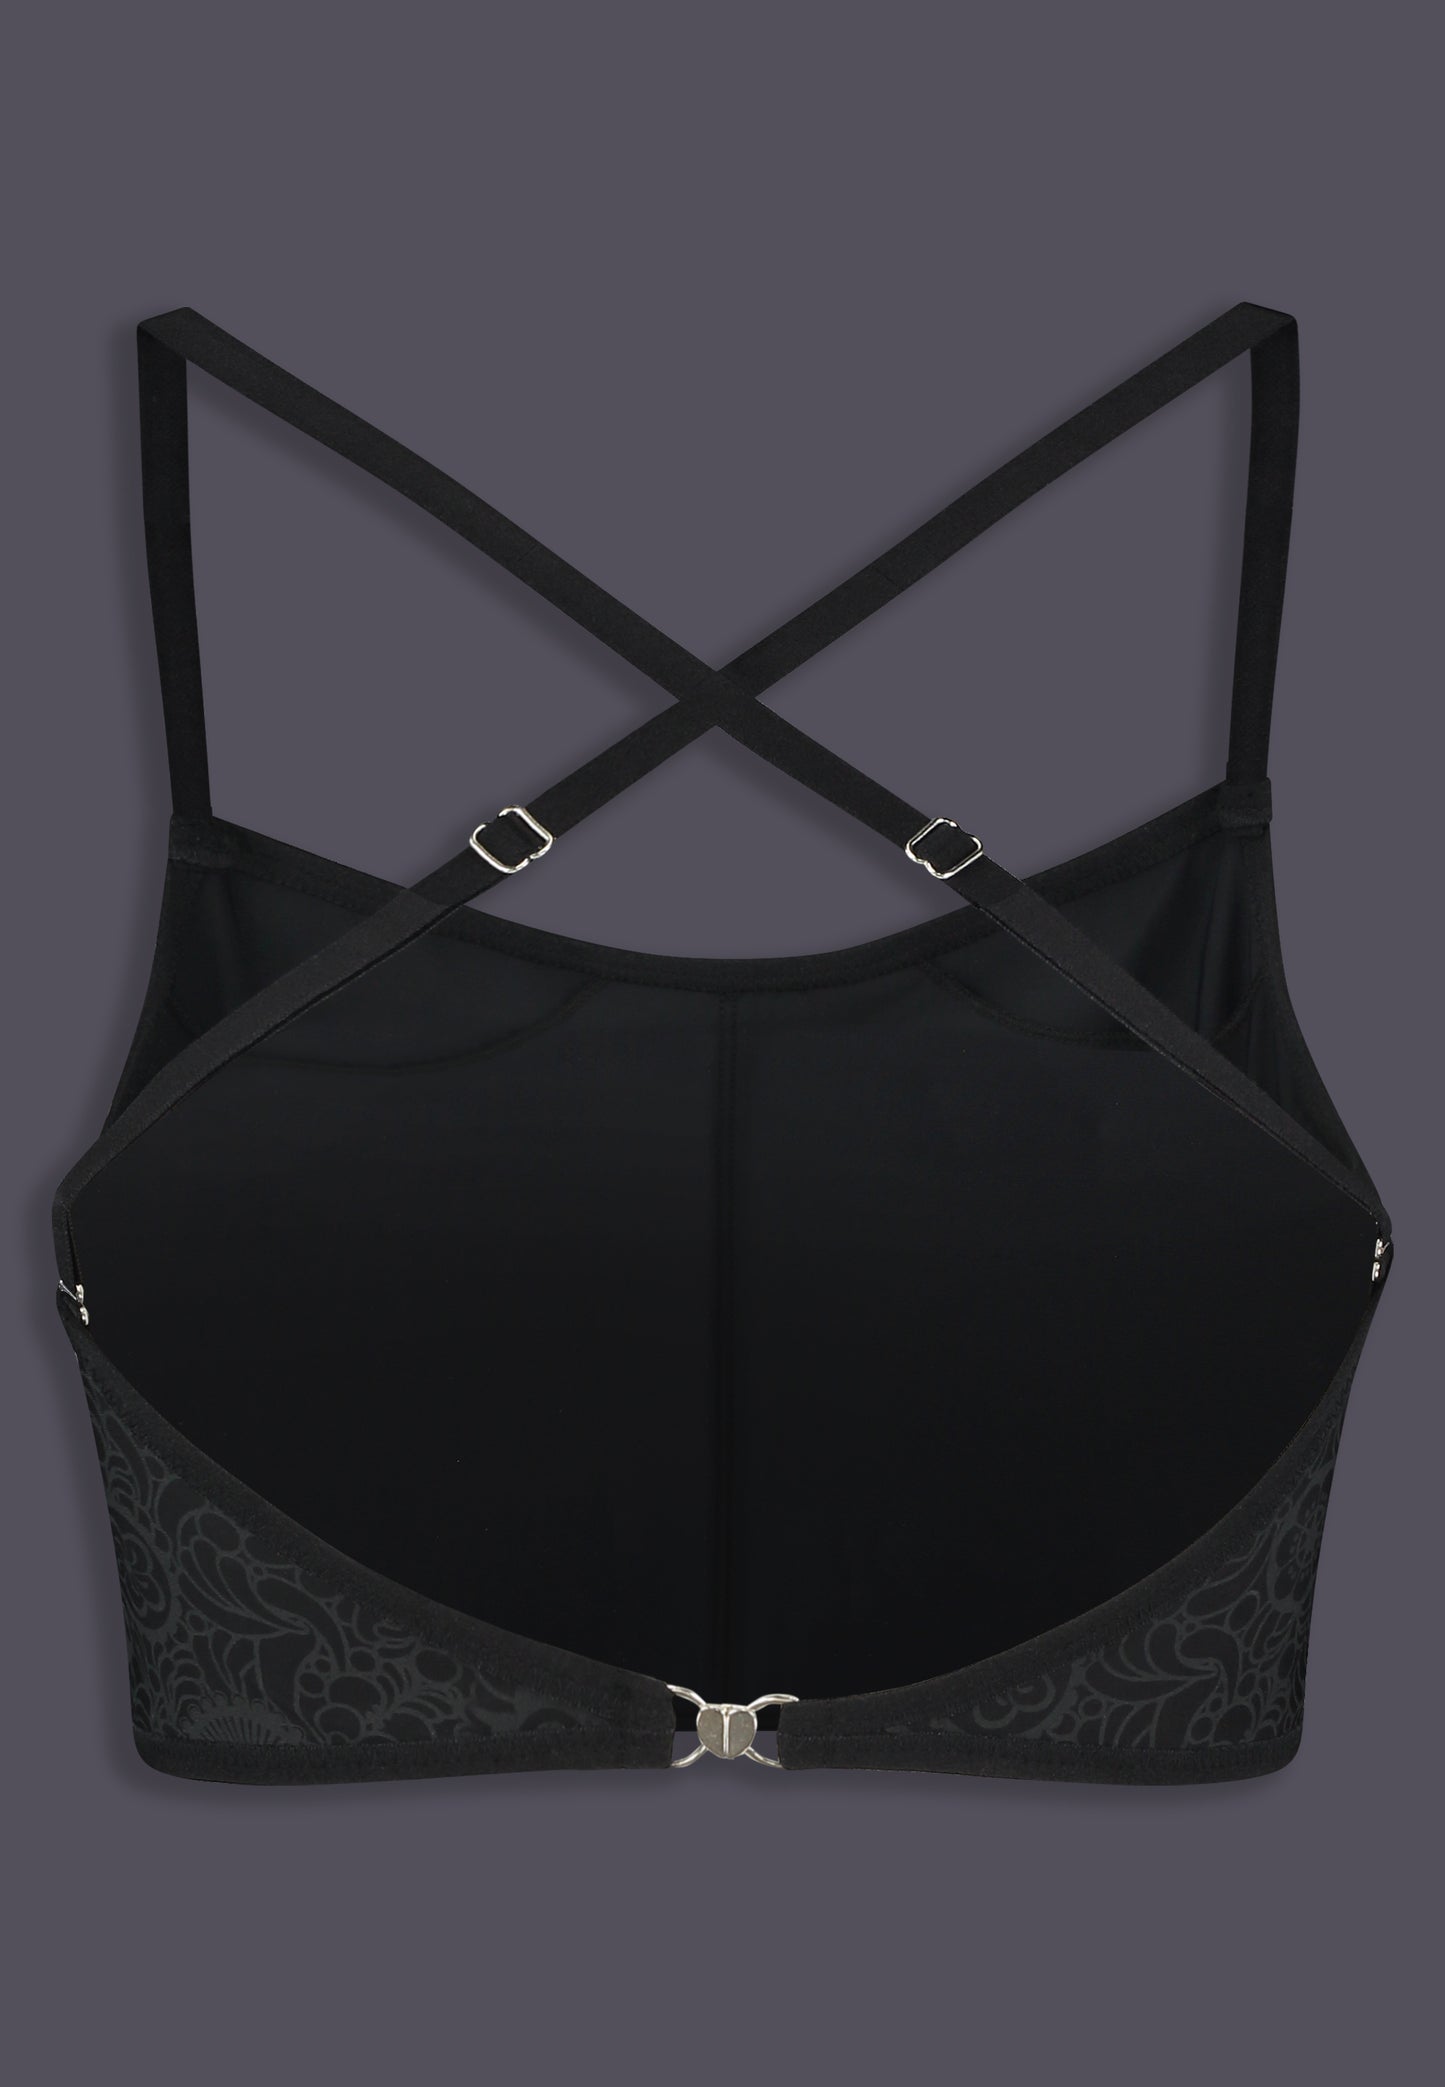 Bikinitop Advanced black grey floral print, back view